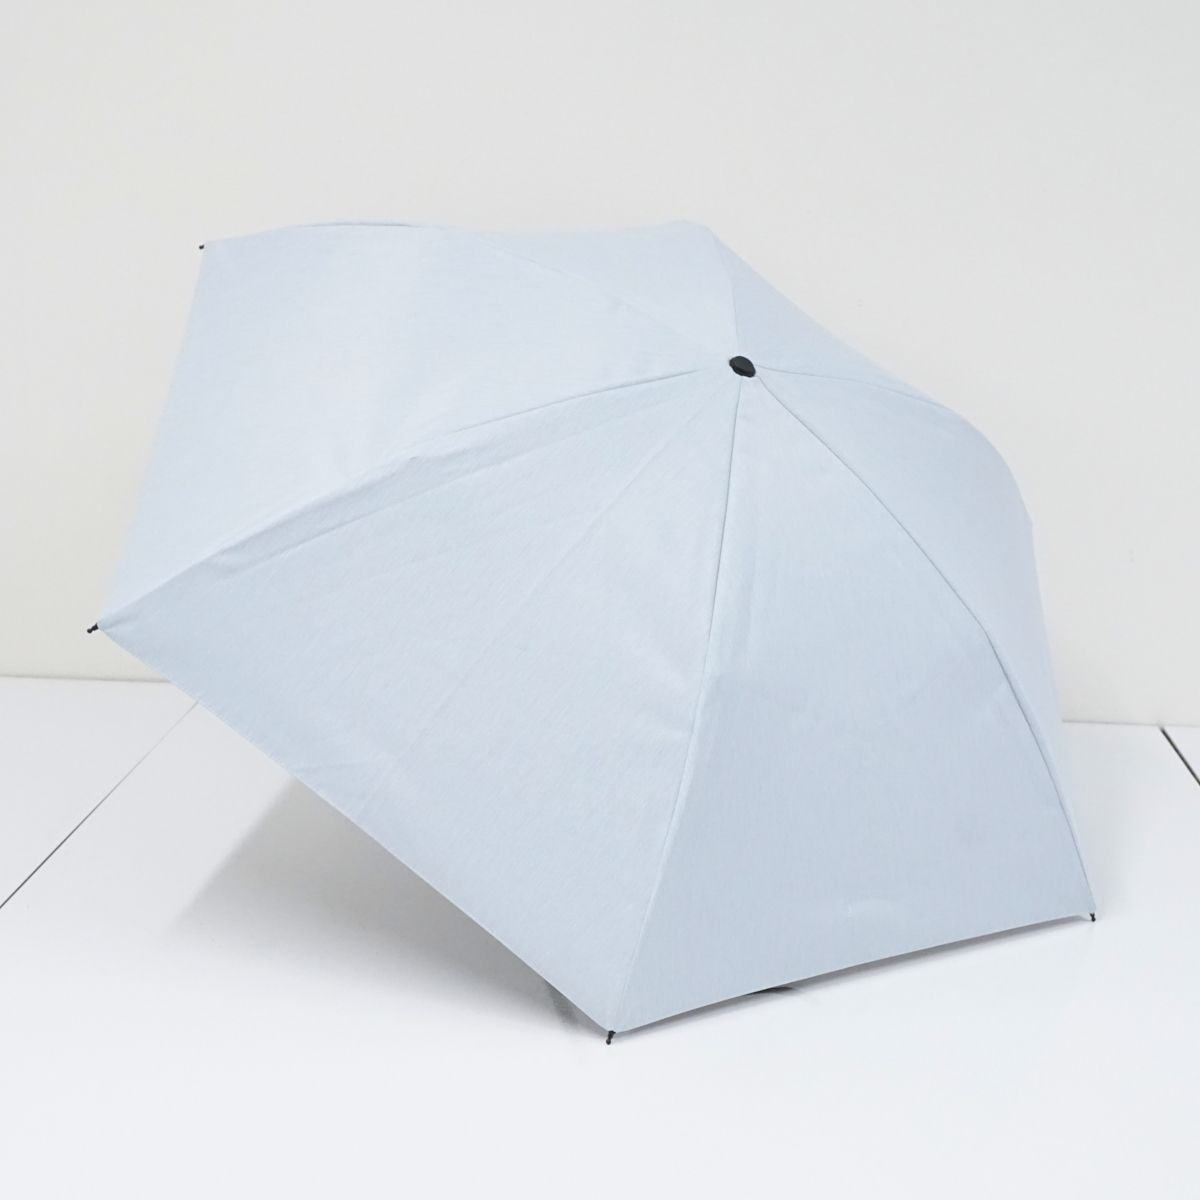 サンバリア100 完全遮光折日傘 USED美品 2段折 コンパクト moku-